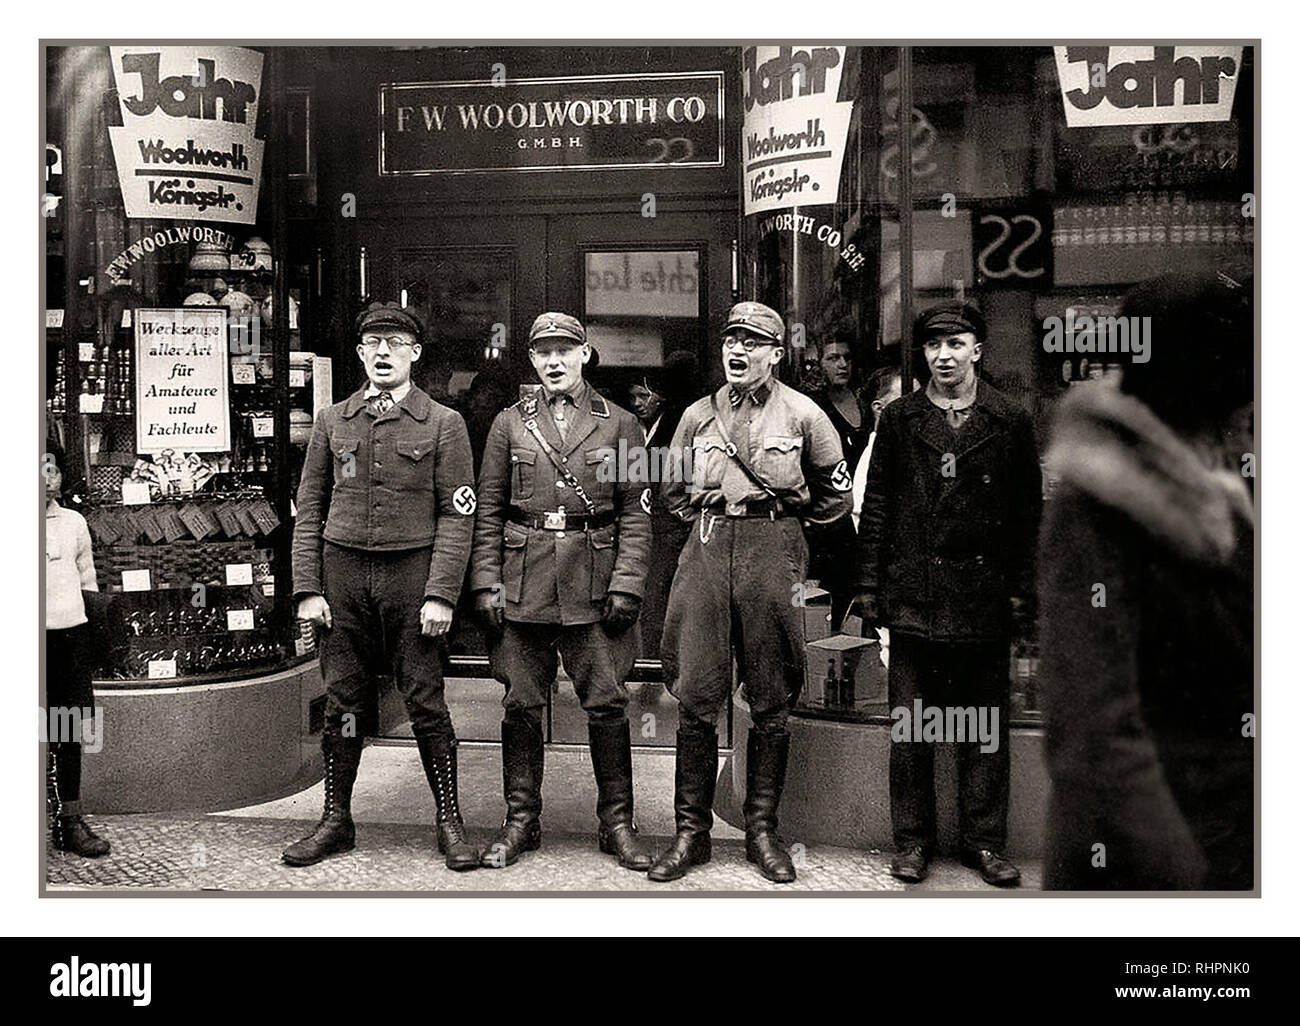 Les membres du parti NSDAP Sturmabteilung boycottent les nazis anti-juifs et les membres du parti NSDAP Sturmabteilung se livrent à des chants racistes anti-juifs, à l'entrée du magasin allemand Woolworth, pour promouvoir le boycott de Woolworths Germany (prétendument), fondé par des juifs. 1933. Banque D'Images